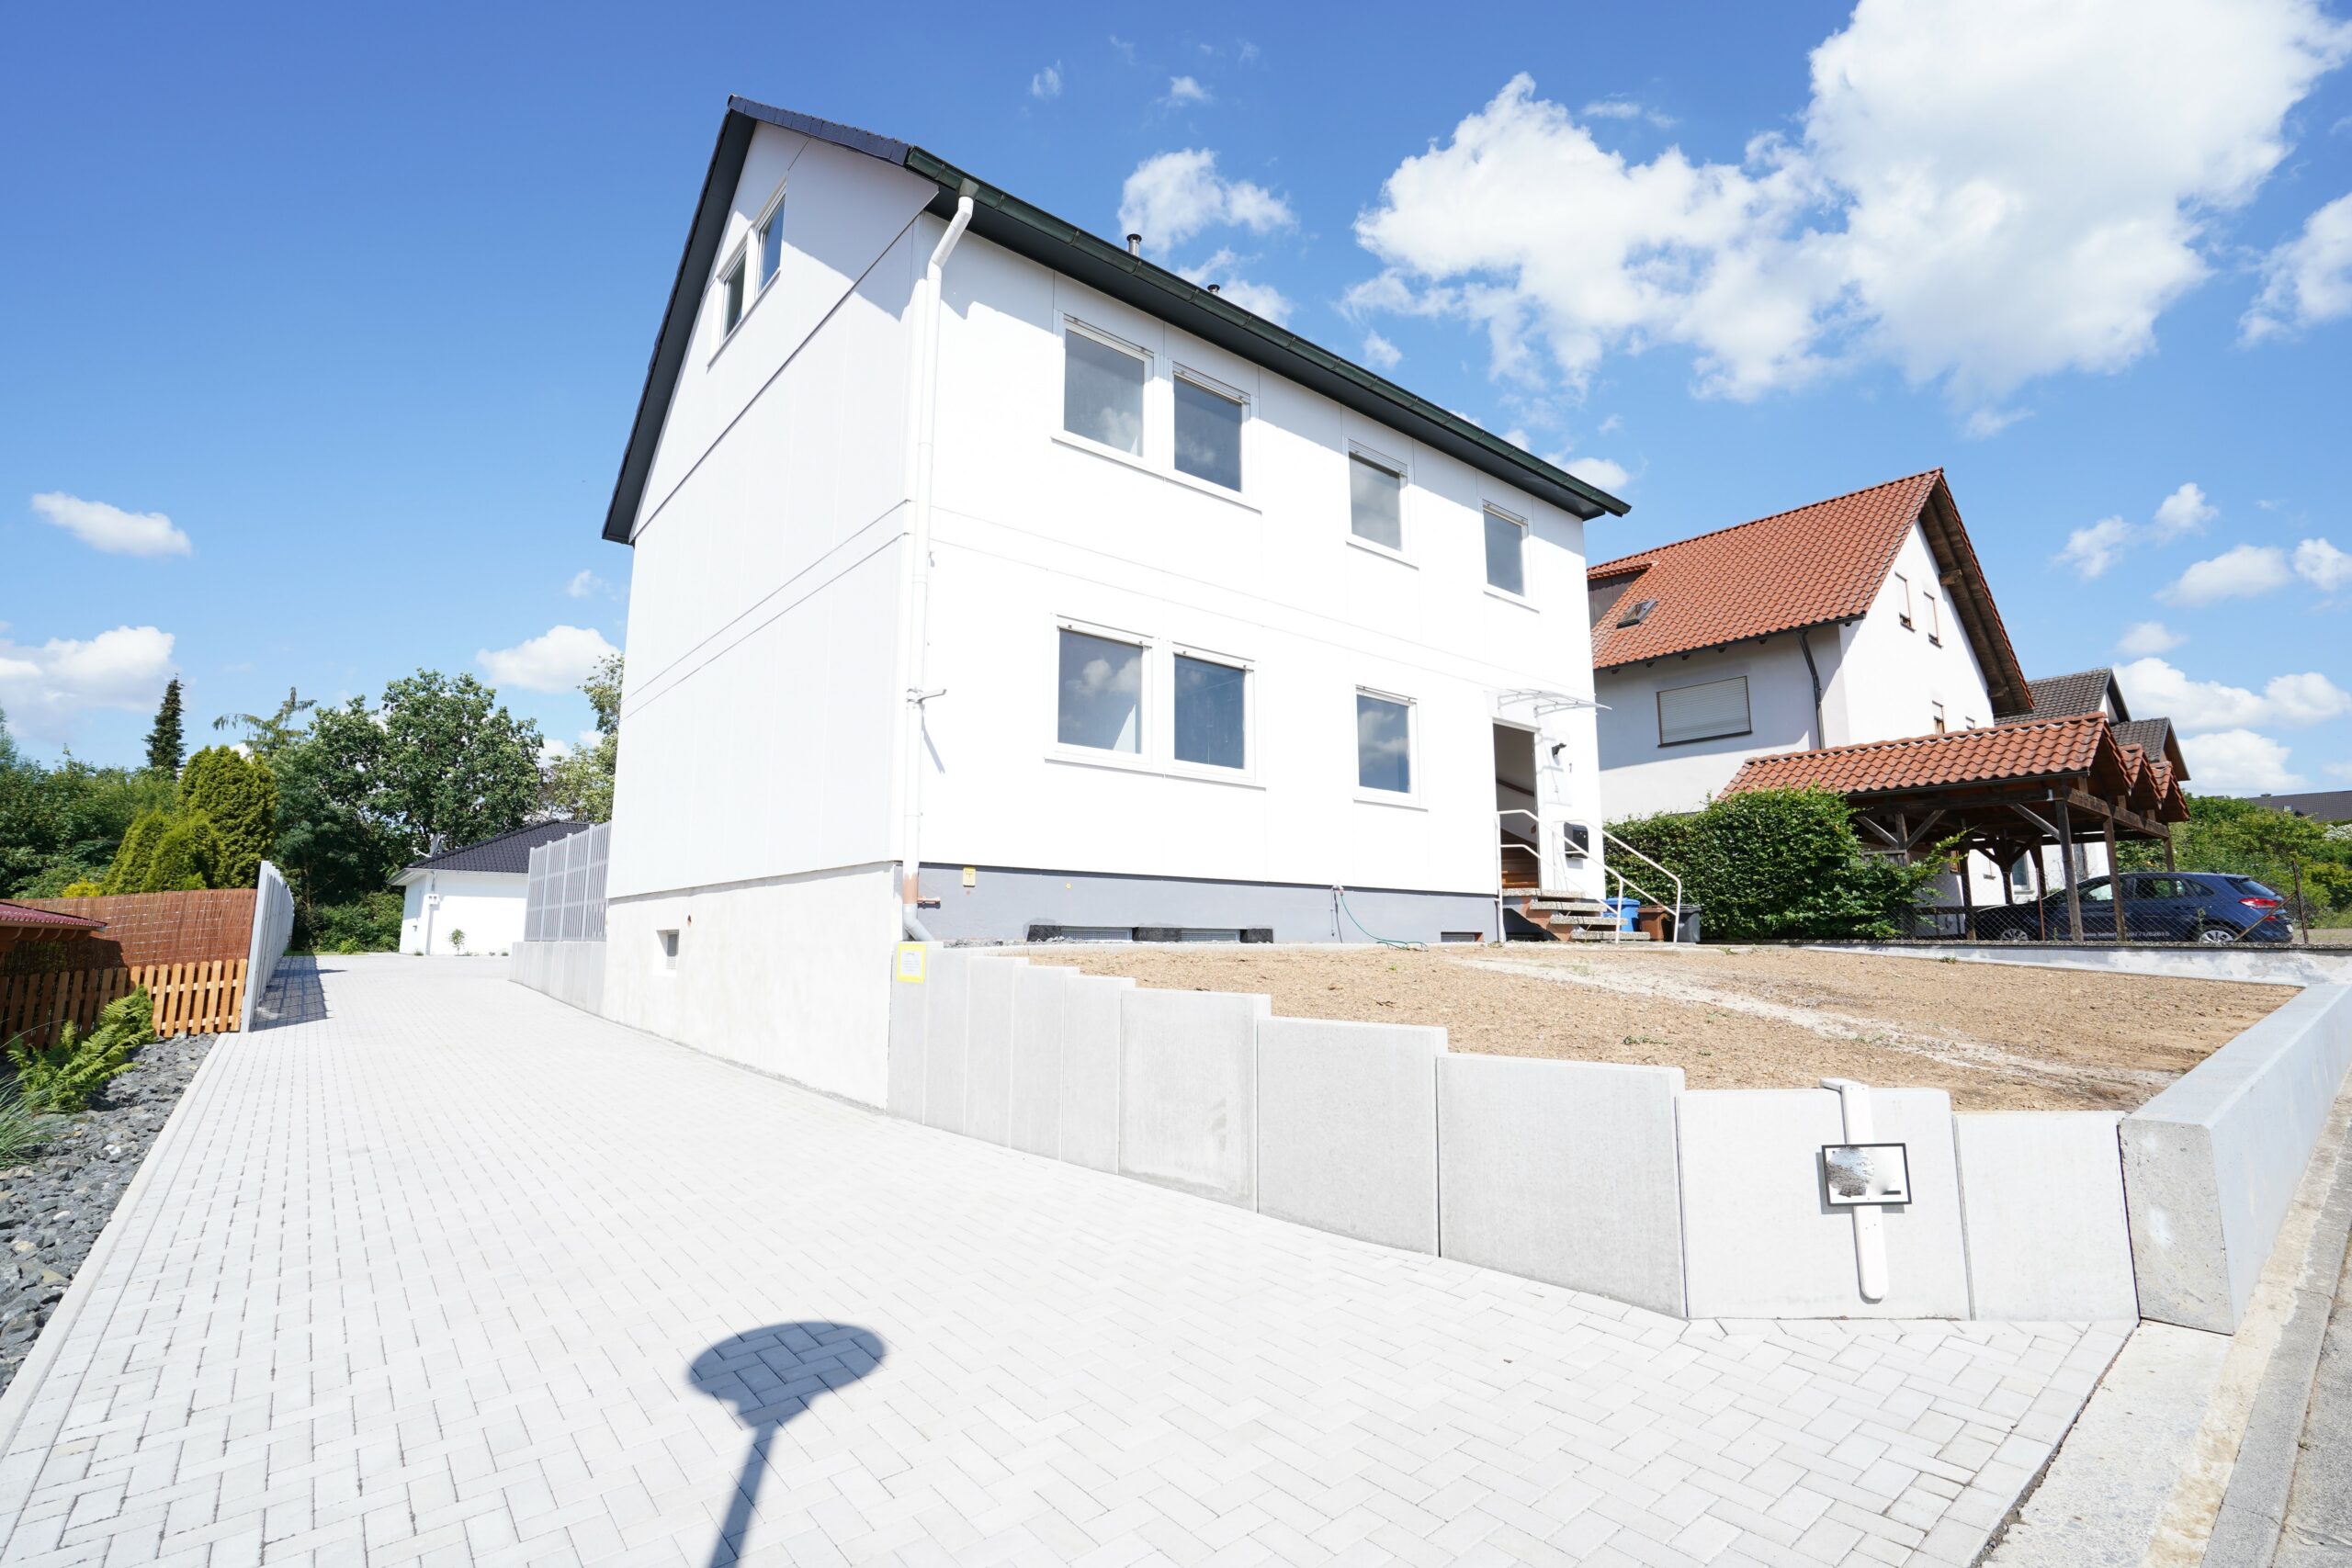 Generationenhaus / Wohnhaus mit Garten in Mellrichstadt